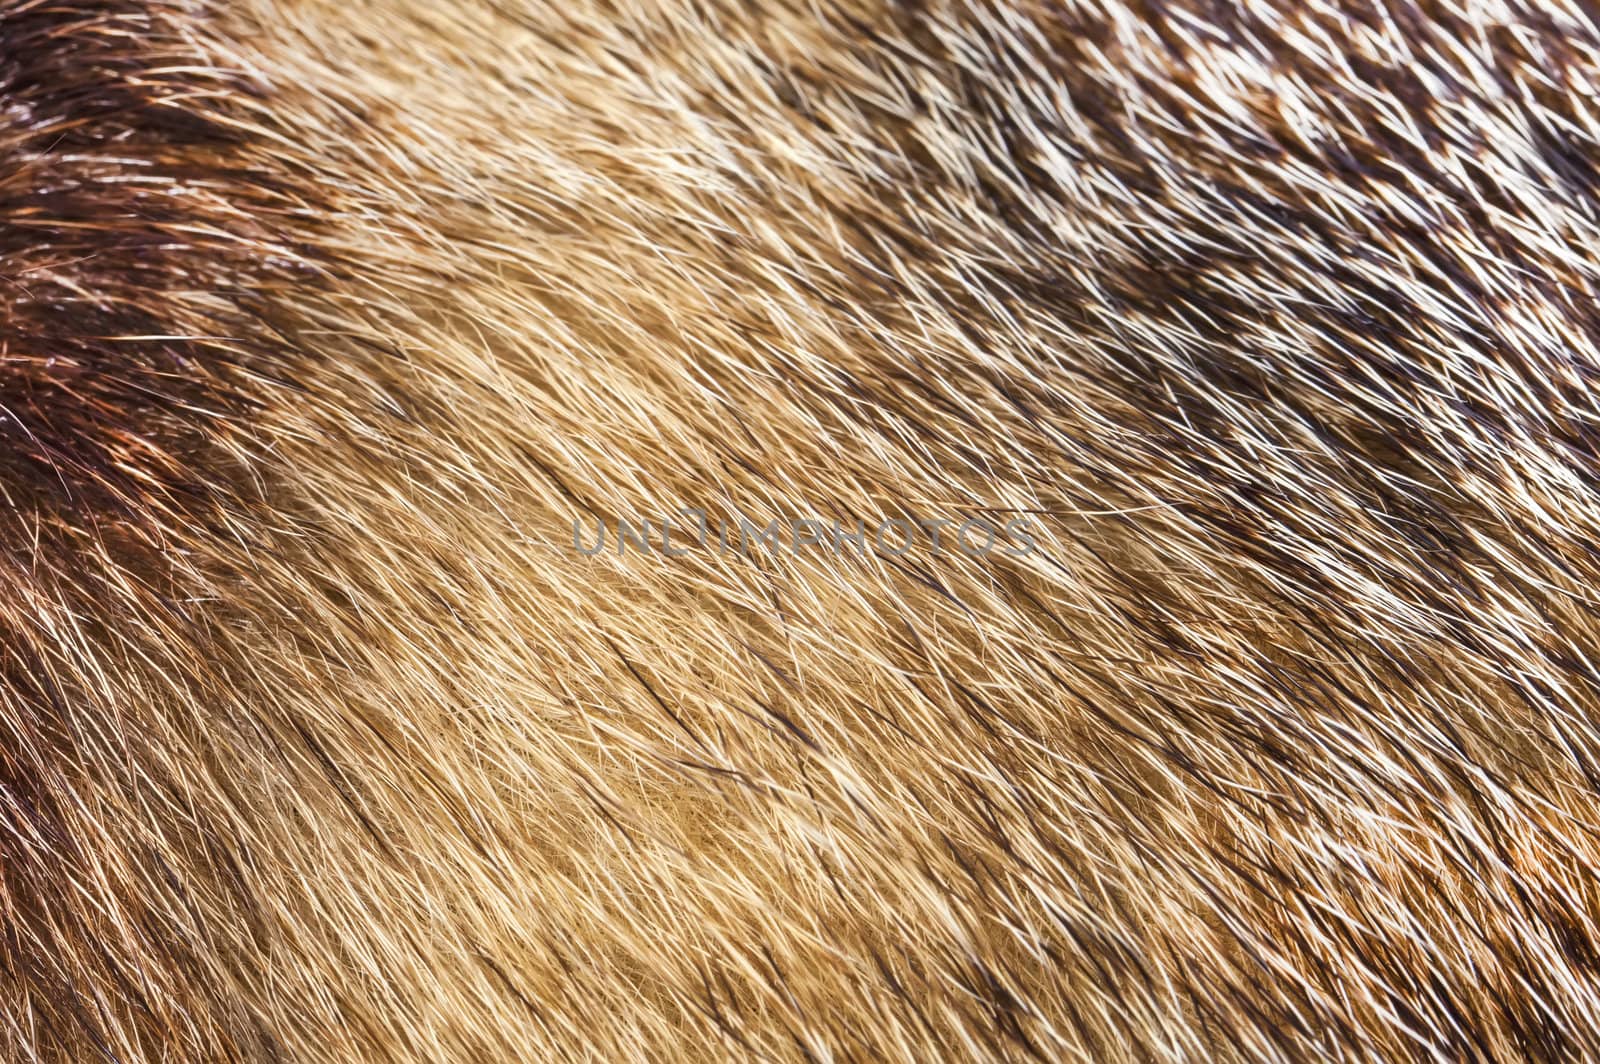 Fur texture backround in golden colors